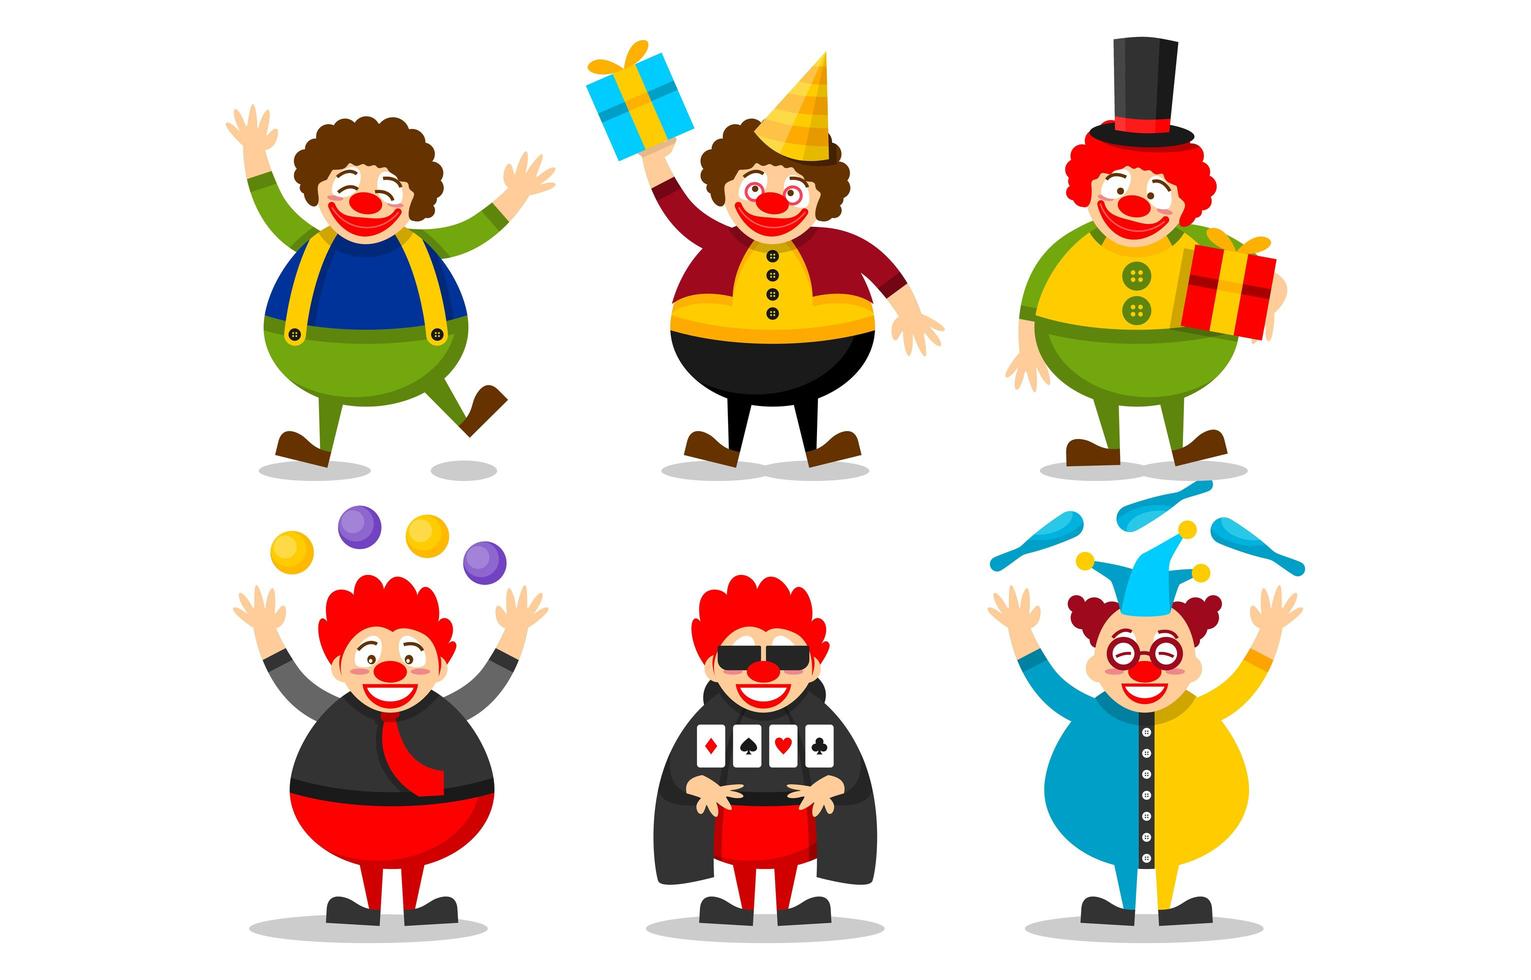 vrolijke clown cartoon tekenset vector